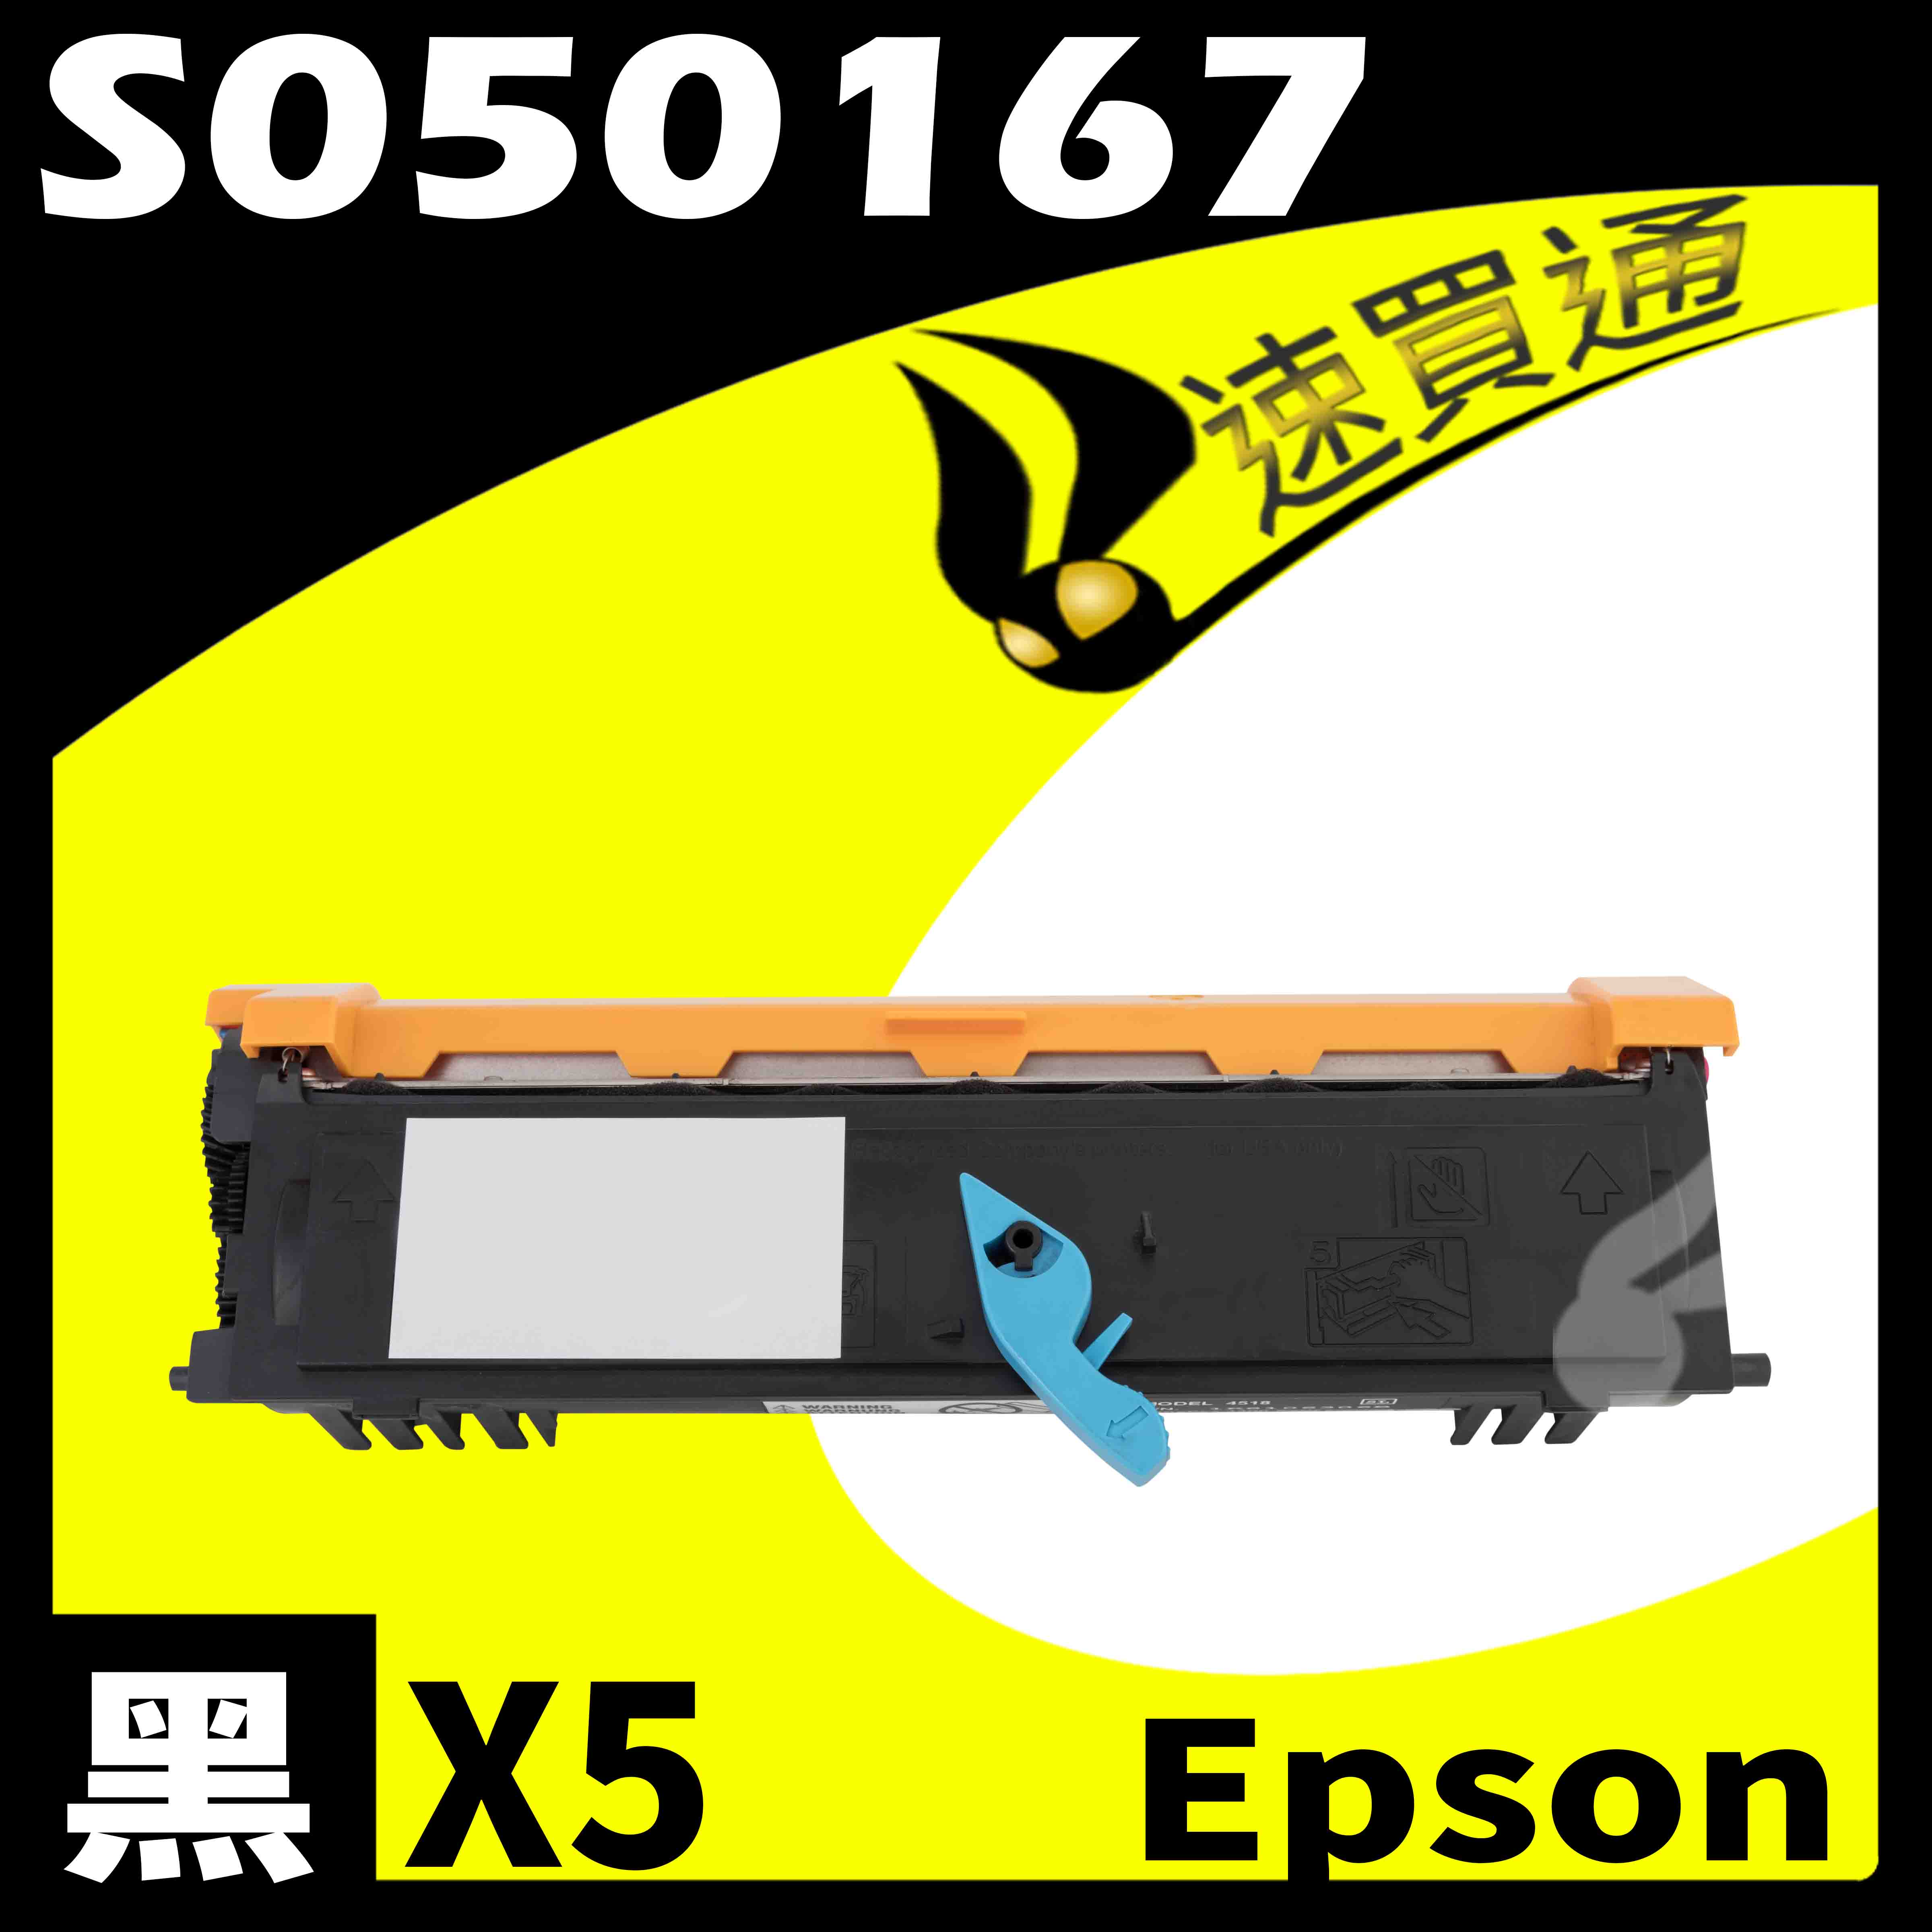 【速買通】超值5件組 EPSON 6200/6200L/S050167 (低階) 相容碳粉匣